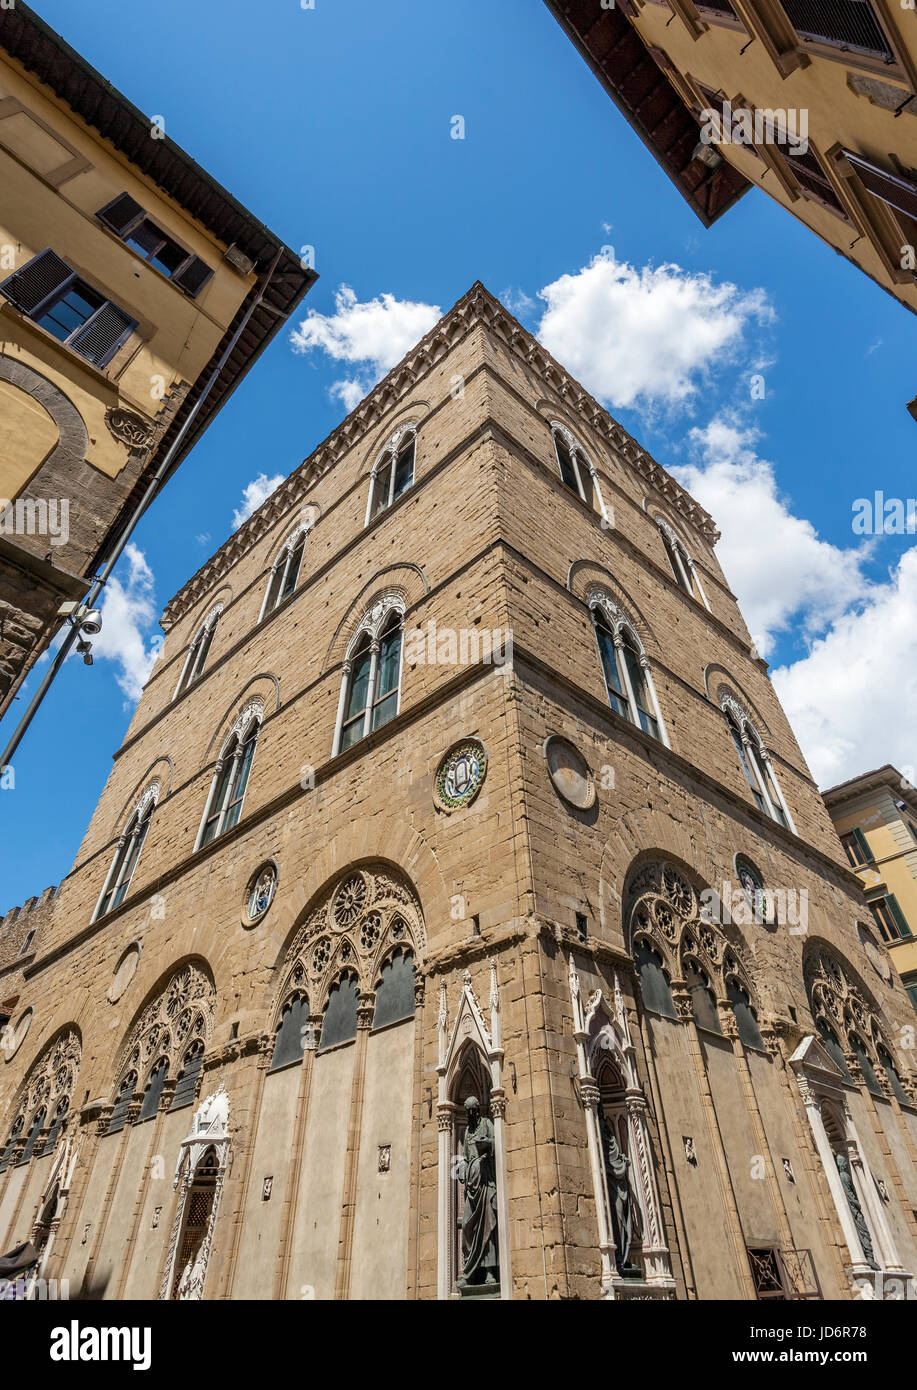 L'église gothique de Orsanmichele - Via dei Calzaiuoli Via Arte della lana - FLORENCE (Florence), Toscane, Italie, Europe Banque D'Images